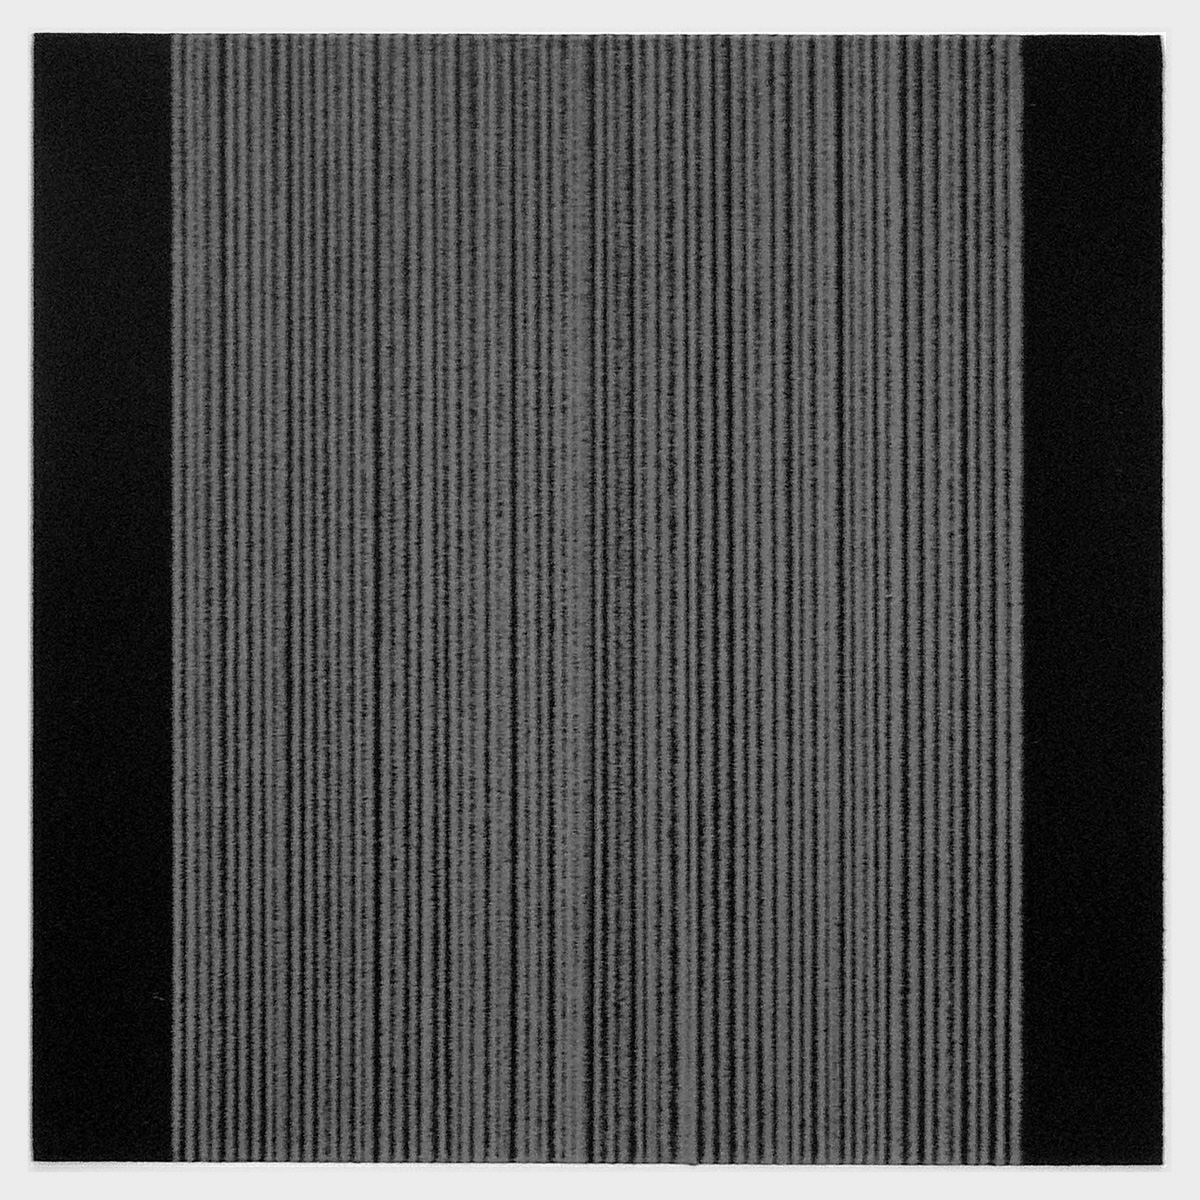 Schwarzer Grund 4, 200216,5 x 16,5 cm in 25,2 x 24,7 cmFarbstift auf grundiertem Papier; gerahmt